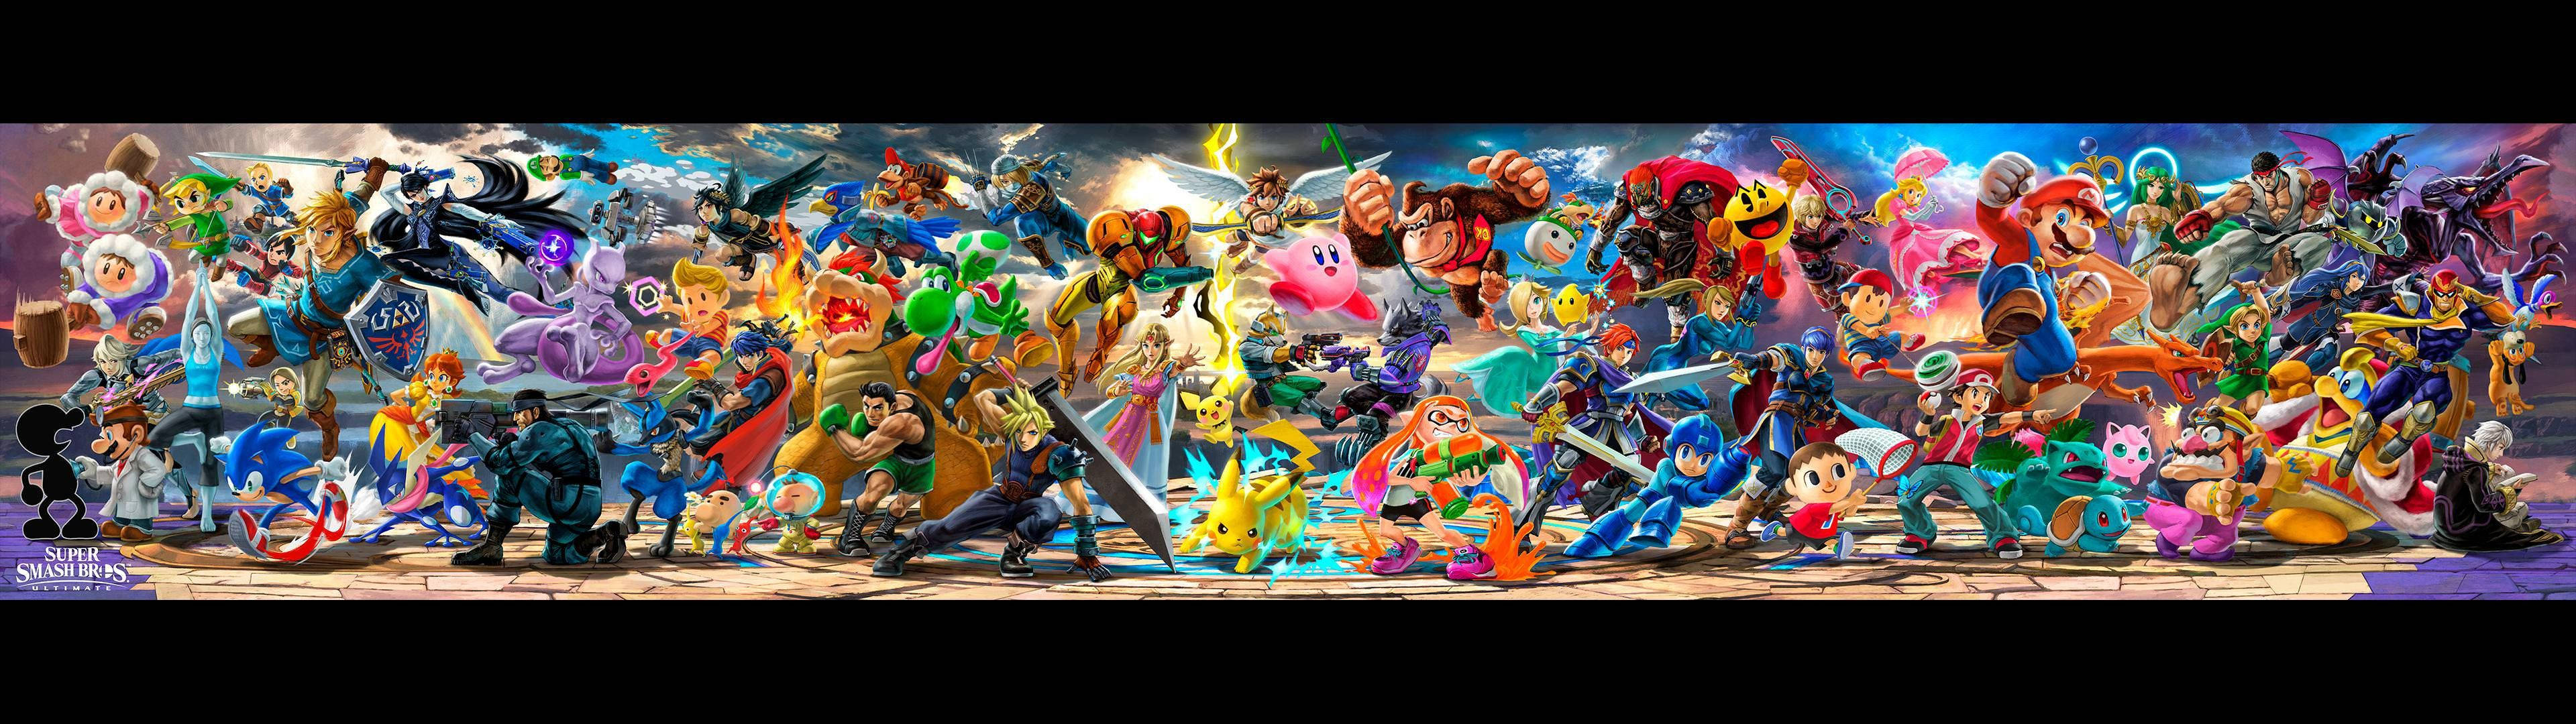 Super Smash Bros Ultimate Epic Banner Wallpaper